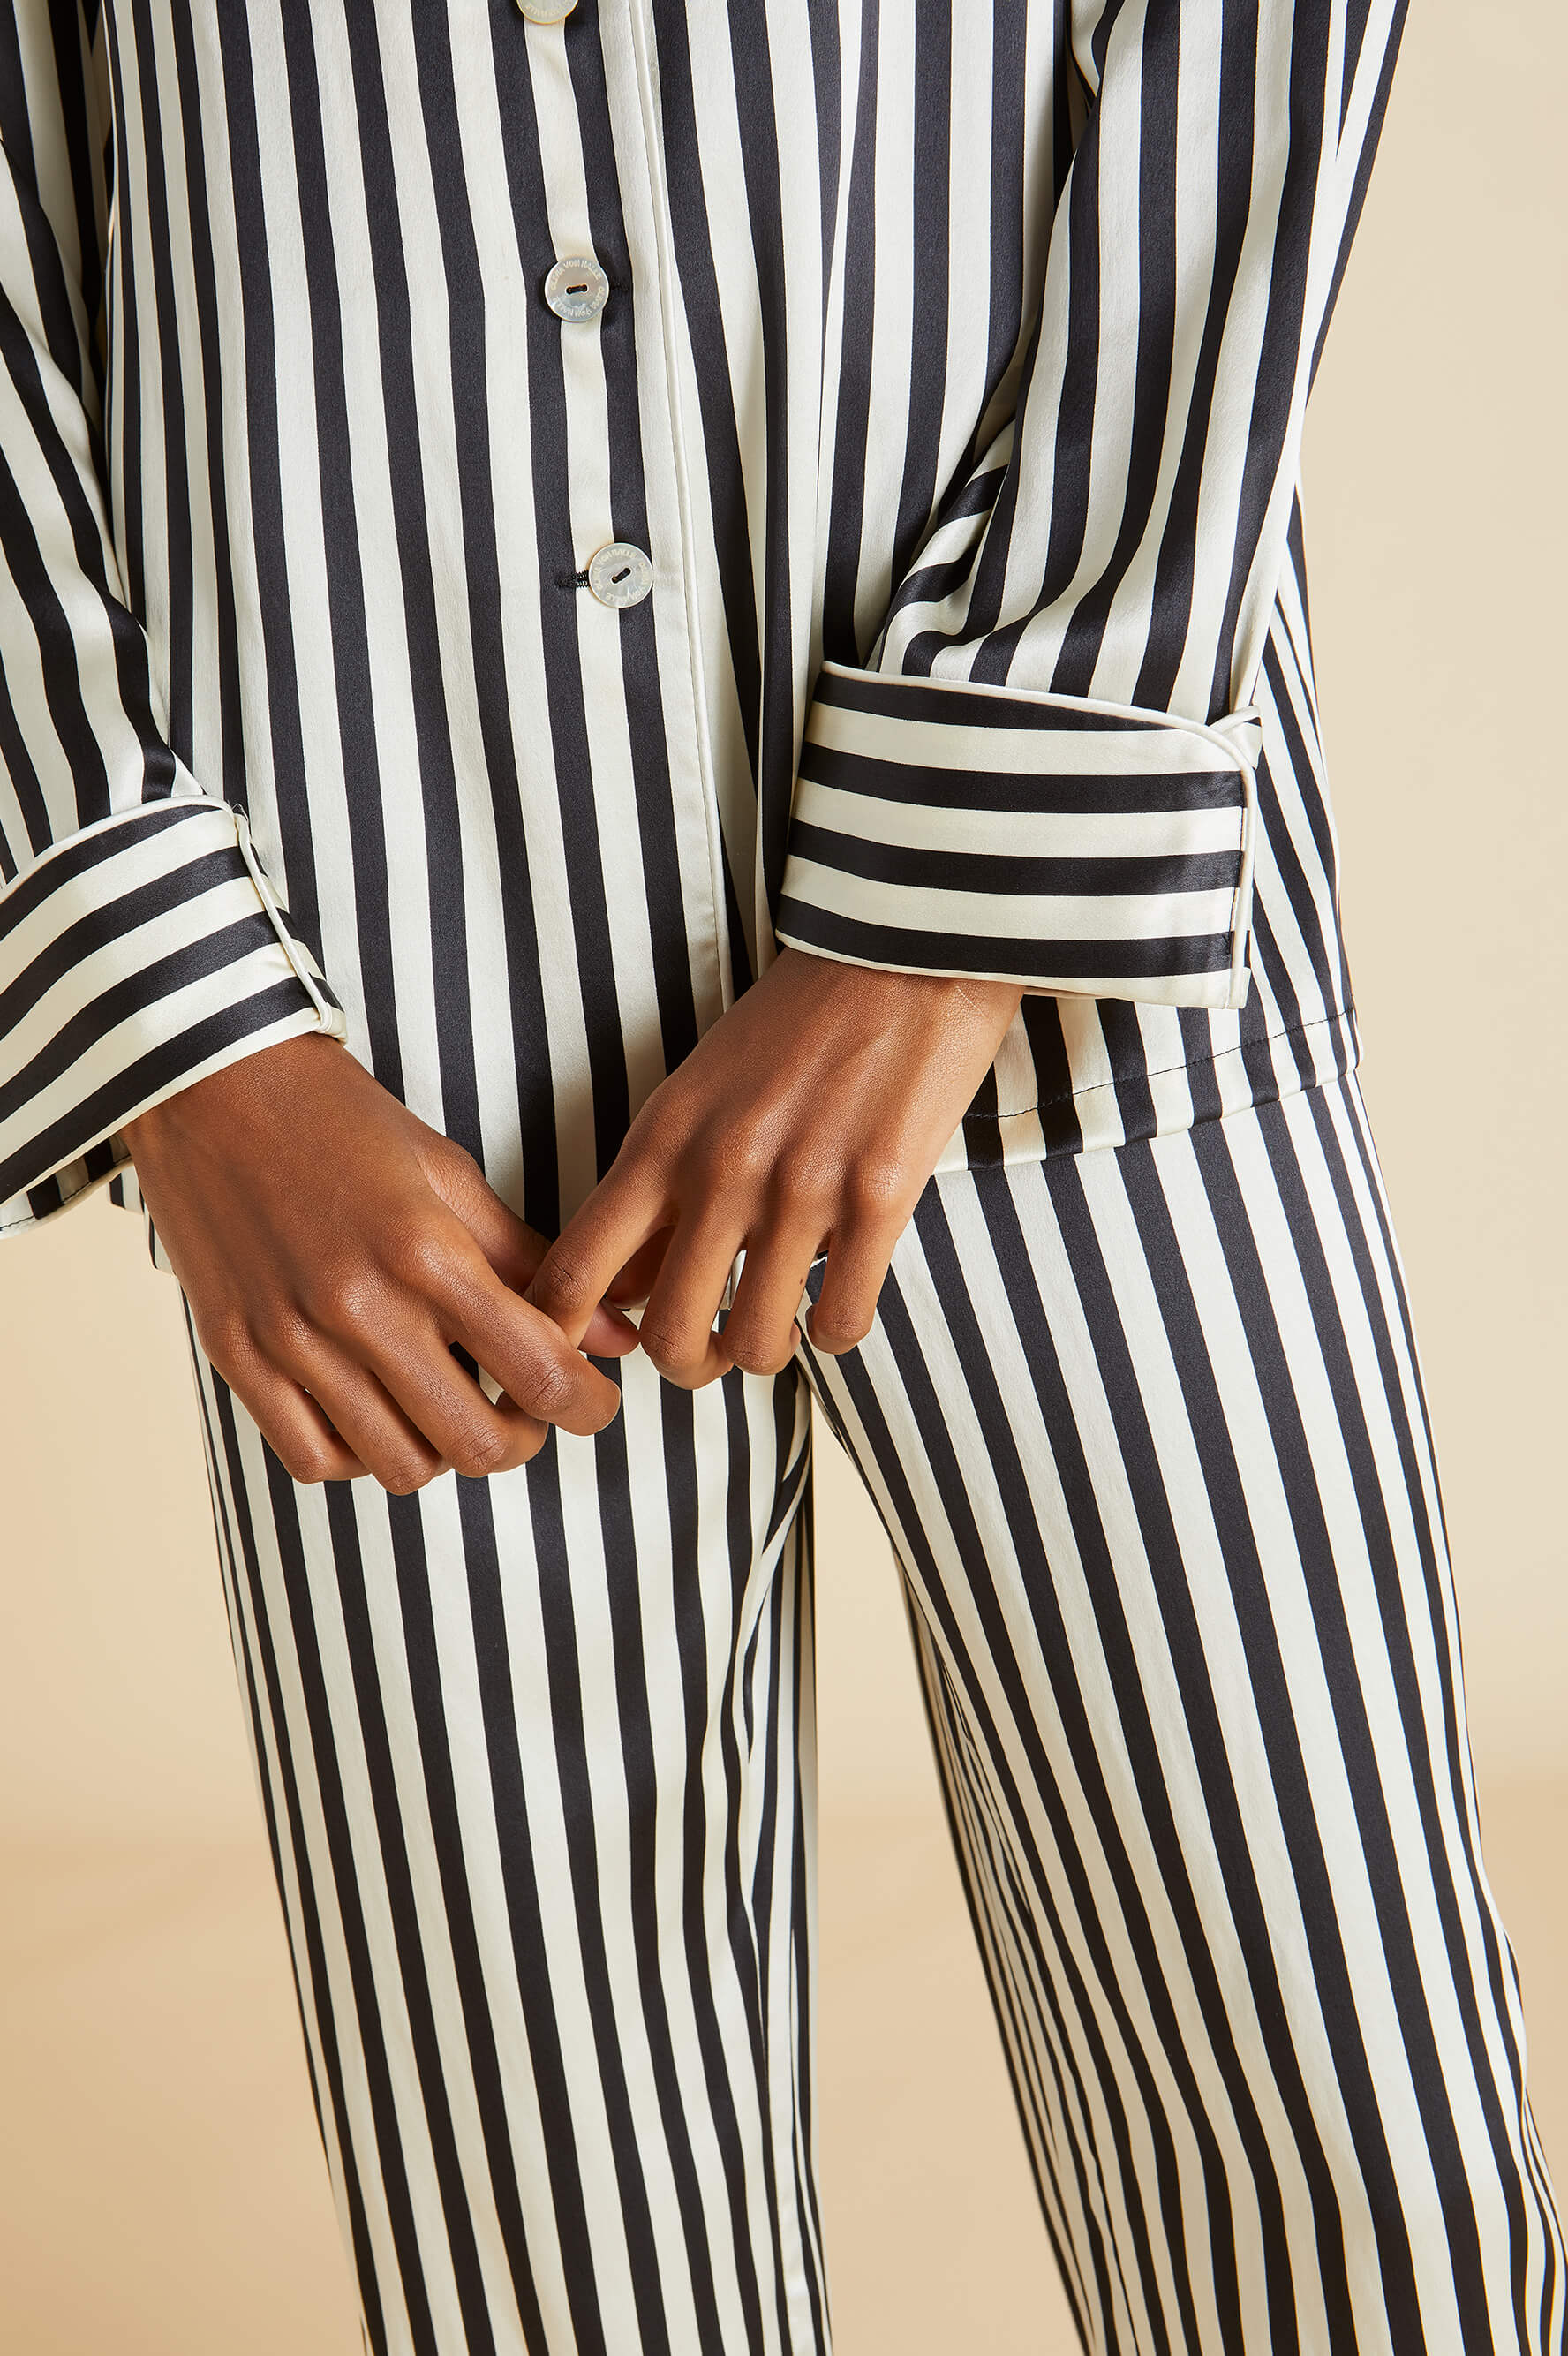 Lv Louis Vuitton pj pajamas pyjama payama pyjamas pjs sleepwear nightwear  satin silk can nego